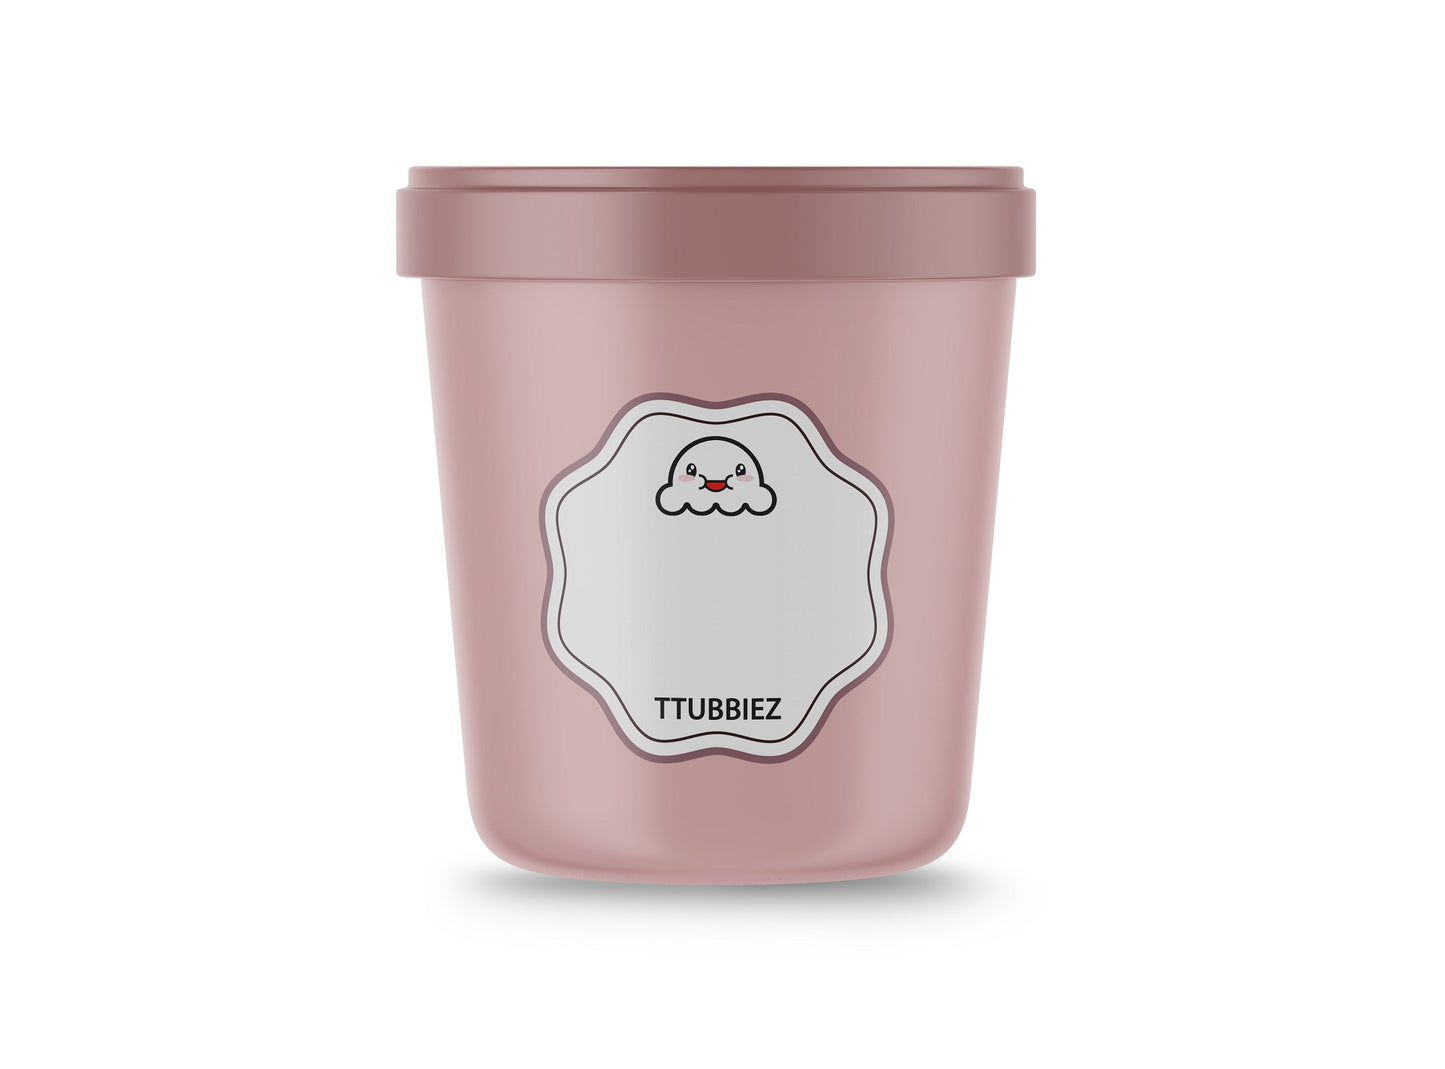 TTUBBIEZ Ice Cream Containers (2 Pack - 1 Quart Each), Ice Cream